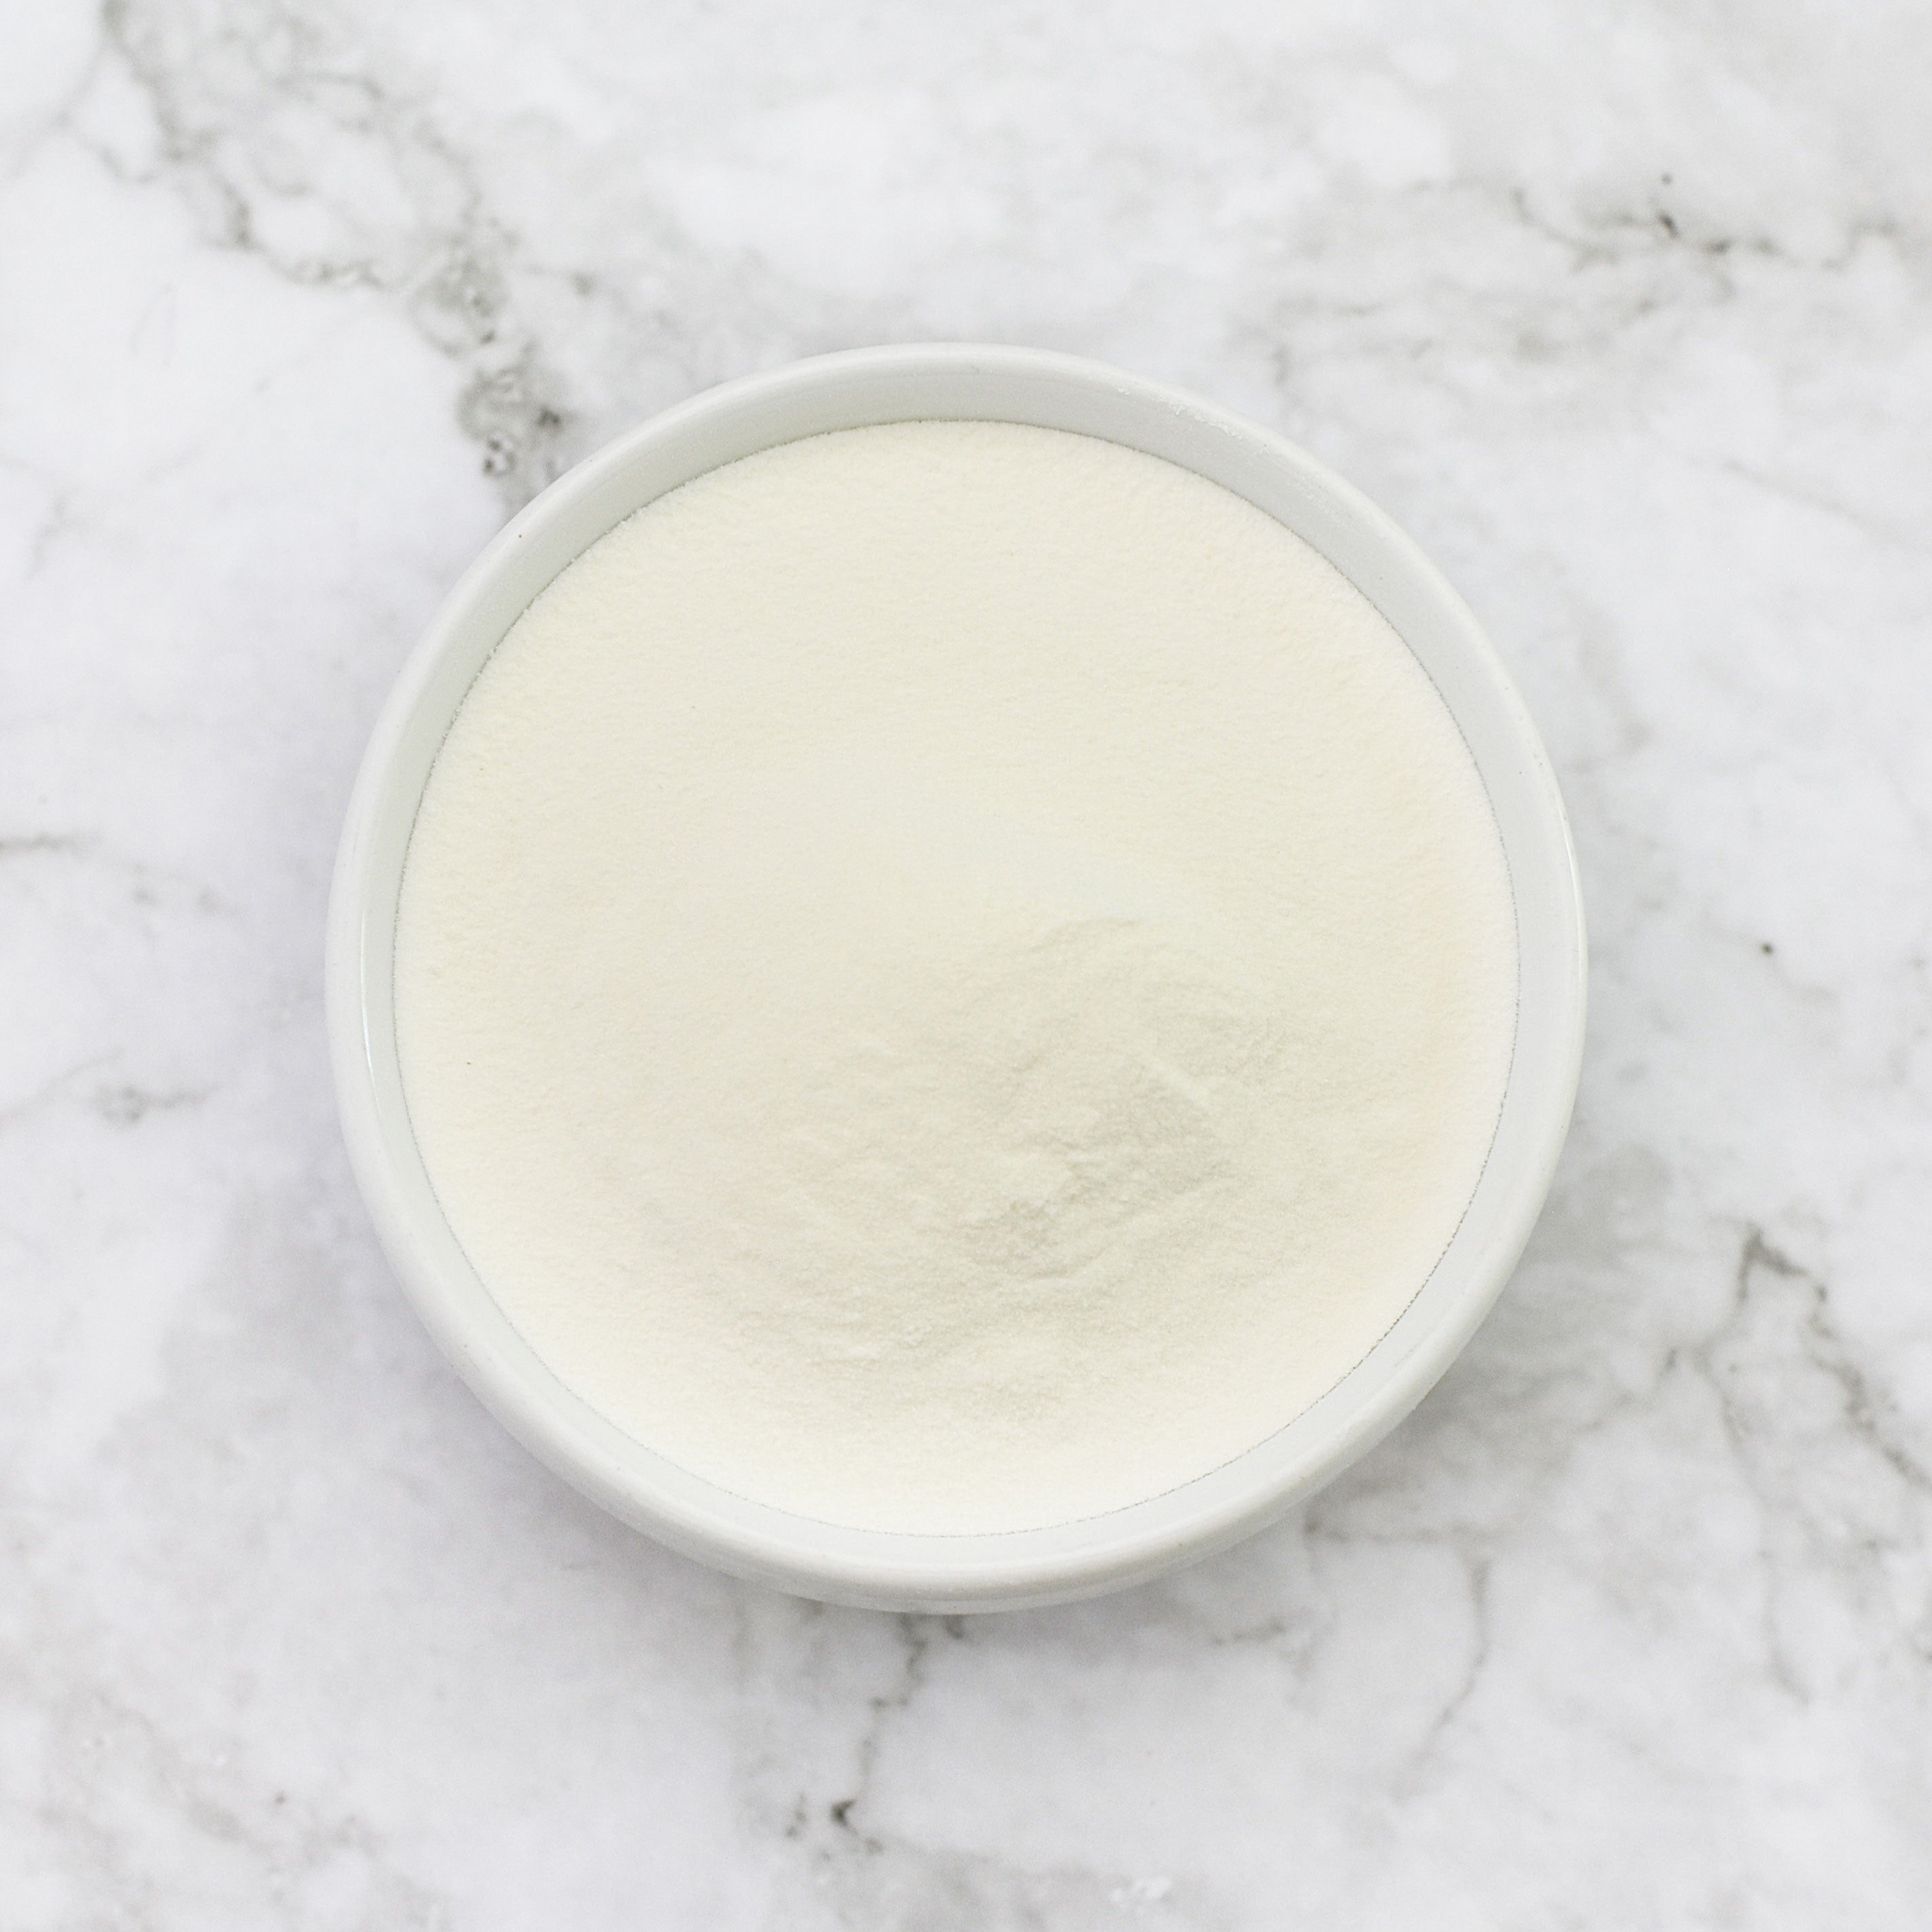 Premium Powdered Butter: Gluten-Free & Non-GMO